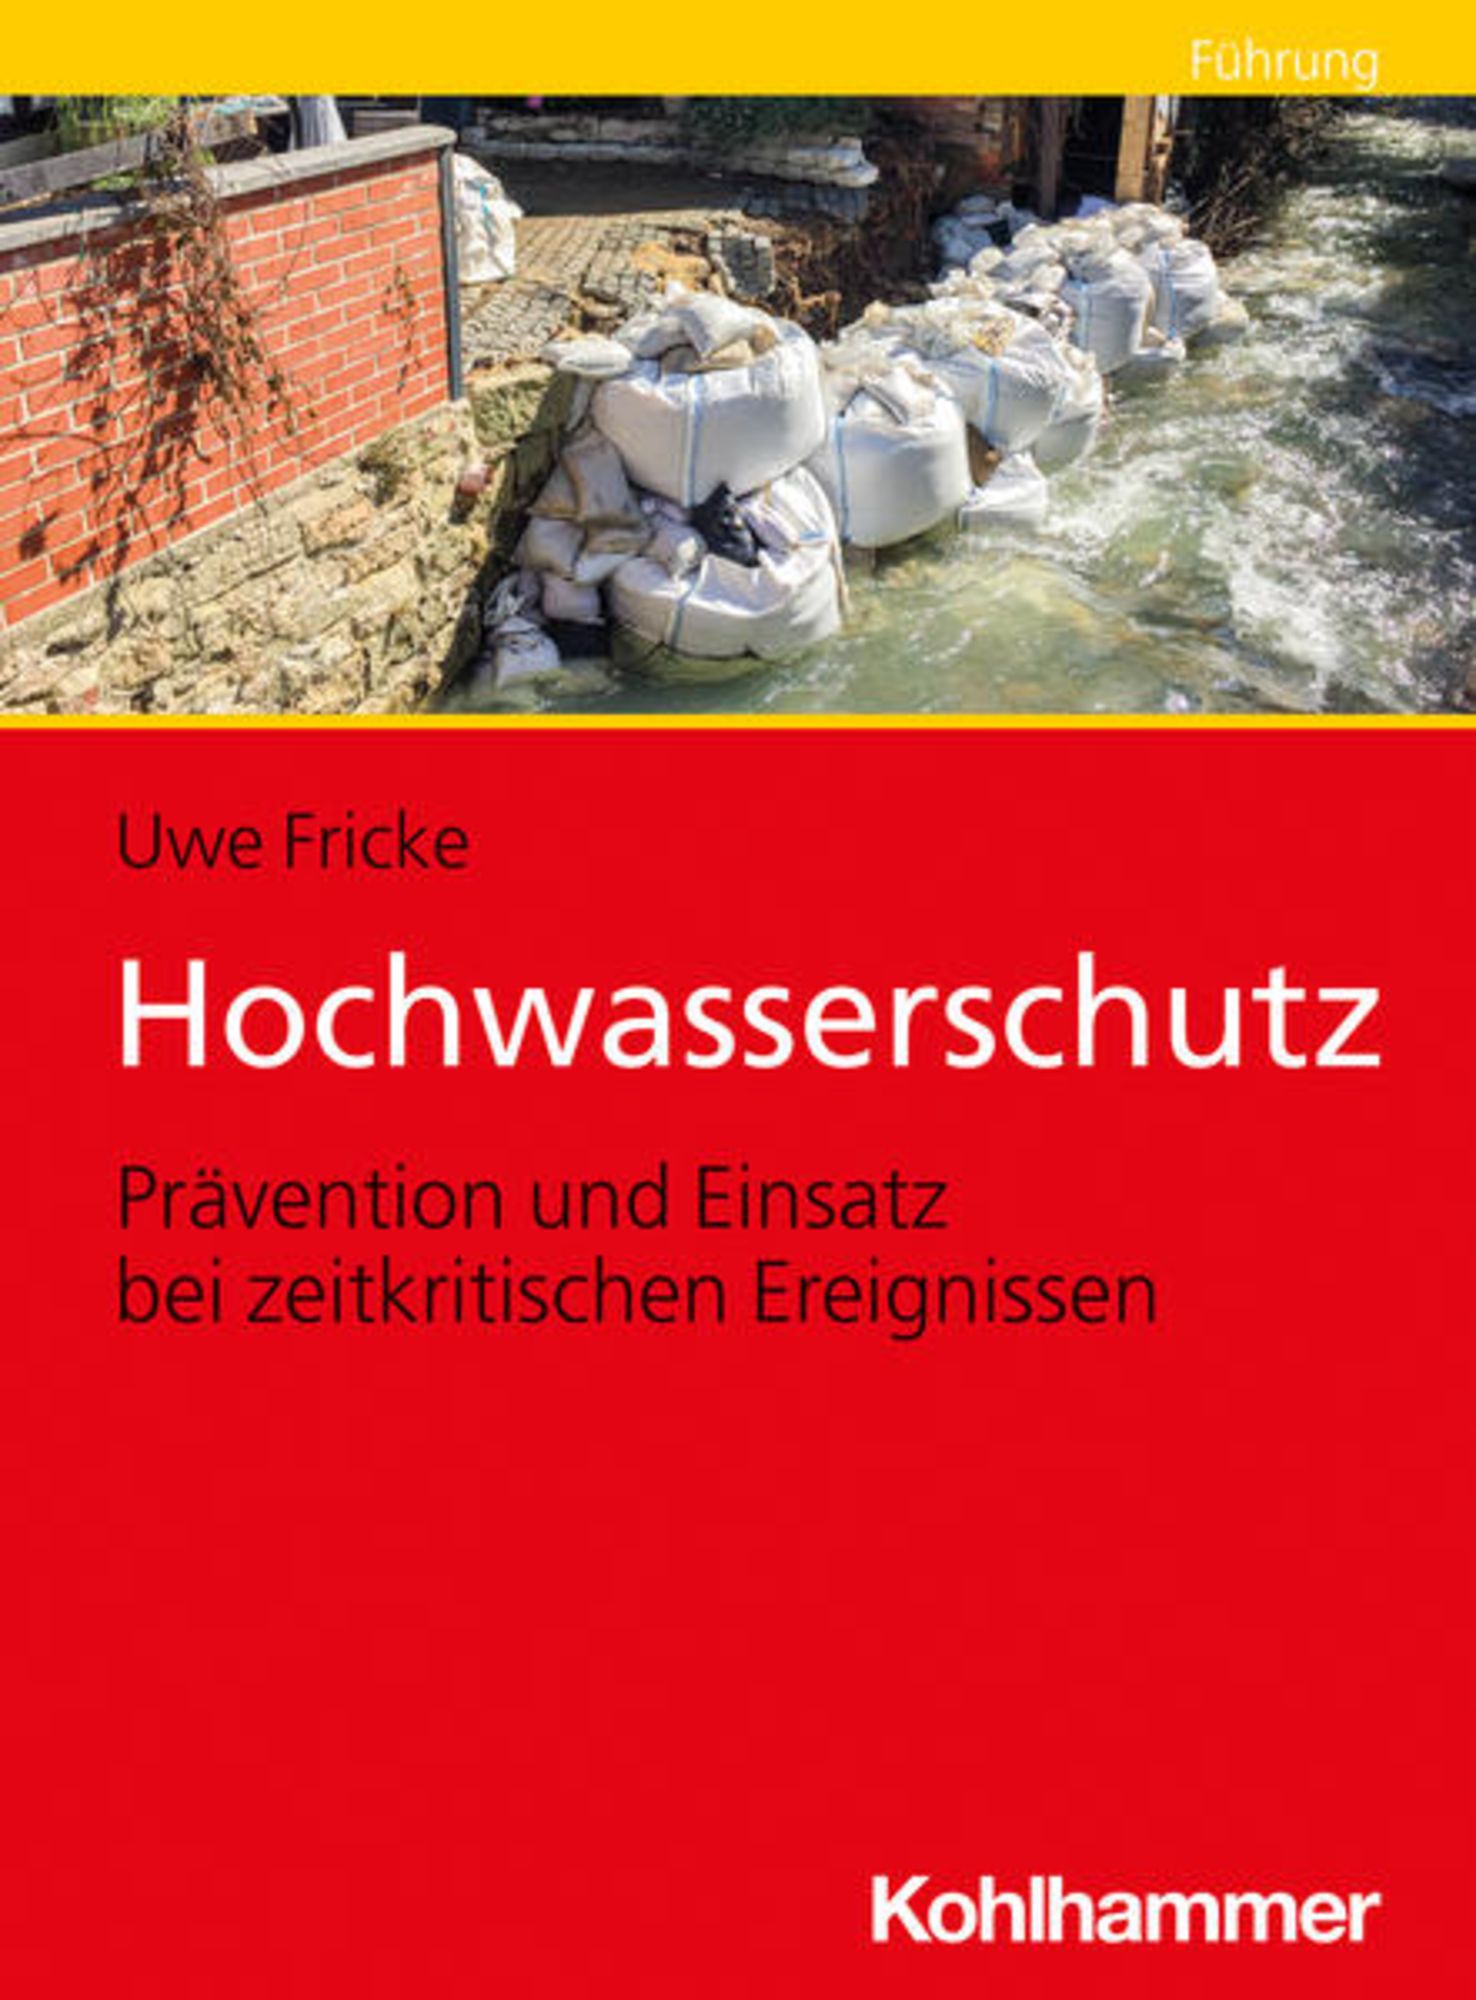 https://images.thalia.media/-/BF2000-2000/d6ff911dc6734e9c934428b869c201fc/hochwasserschutz-taschenbuch-uwe-fricke.jpeg